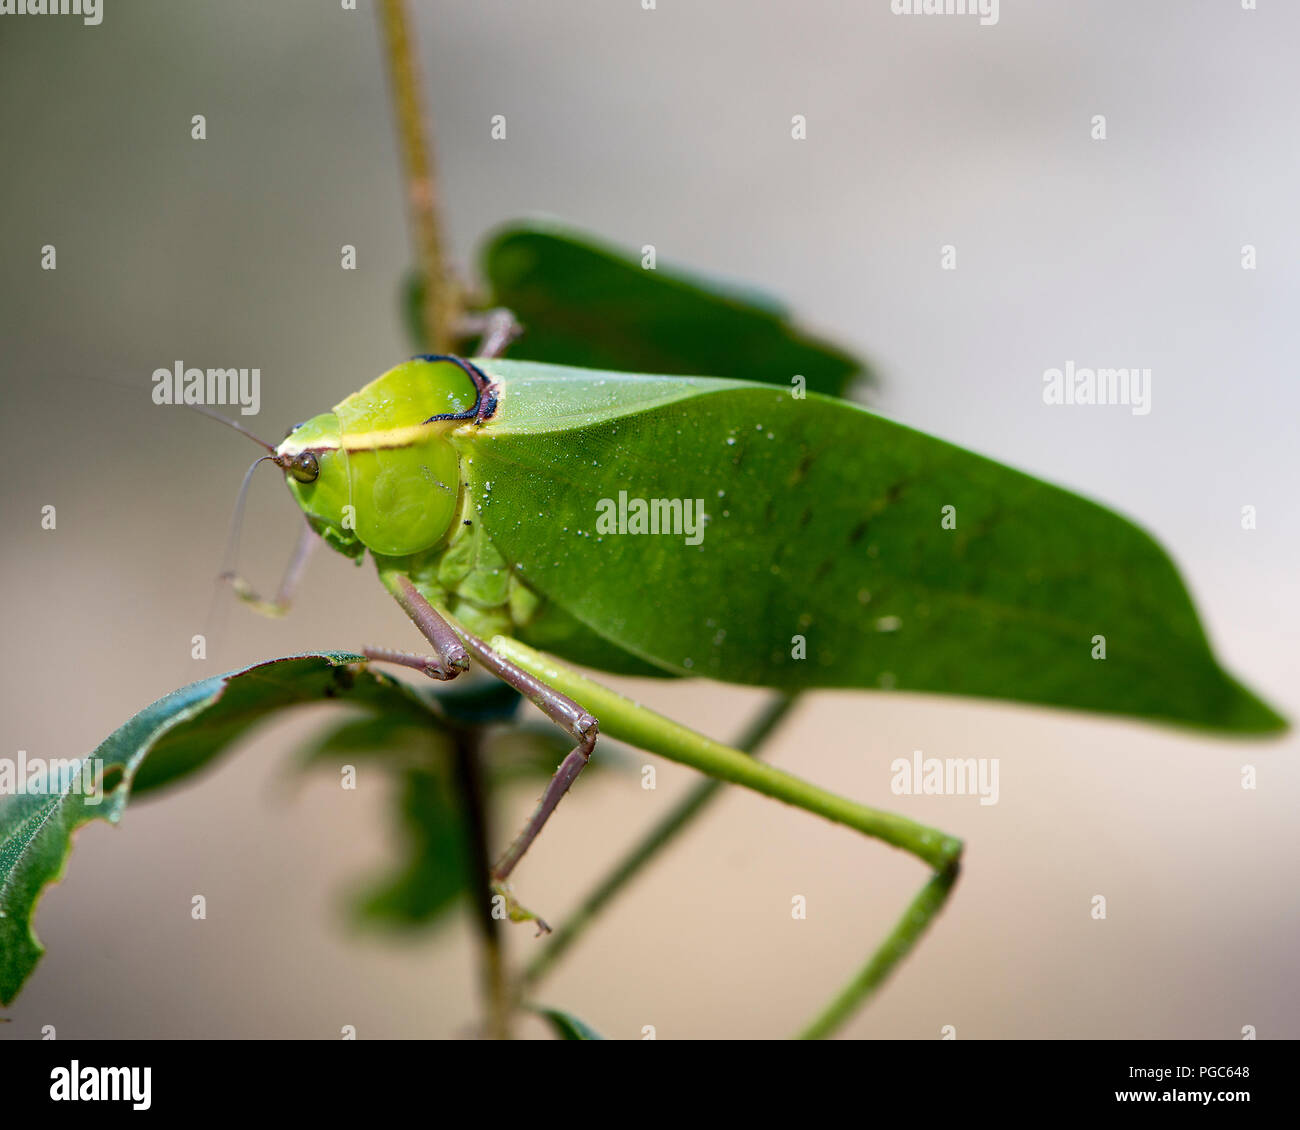 Katydid insetto su un ramo verde con un camuffamento visualizzando il suo colore verde, le antenne e gli occhi, nel suo ambiente e dintorni. Immagine. Ritratto. Foto Stock